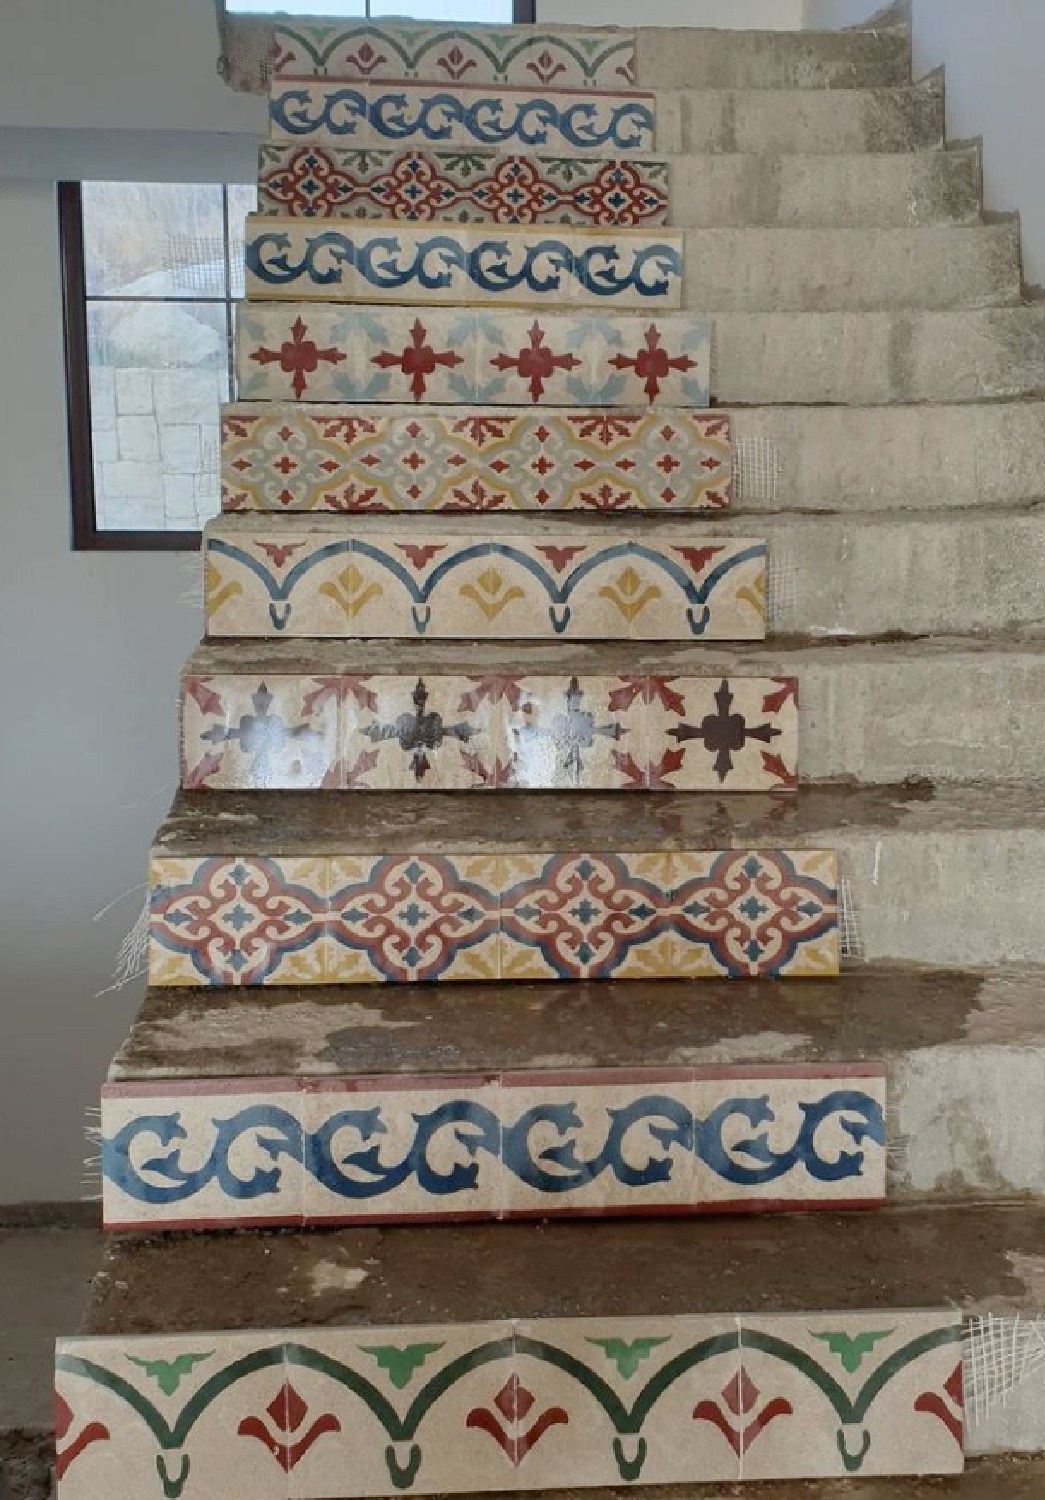 Stair risers with various encaustic tiles ascending - Art Carreaux Ciment. #encaustictiles #staircase